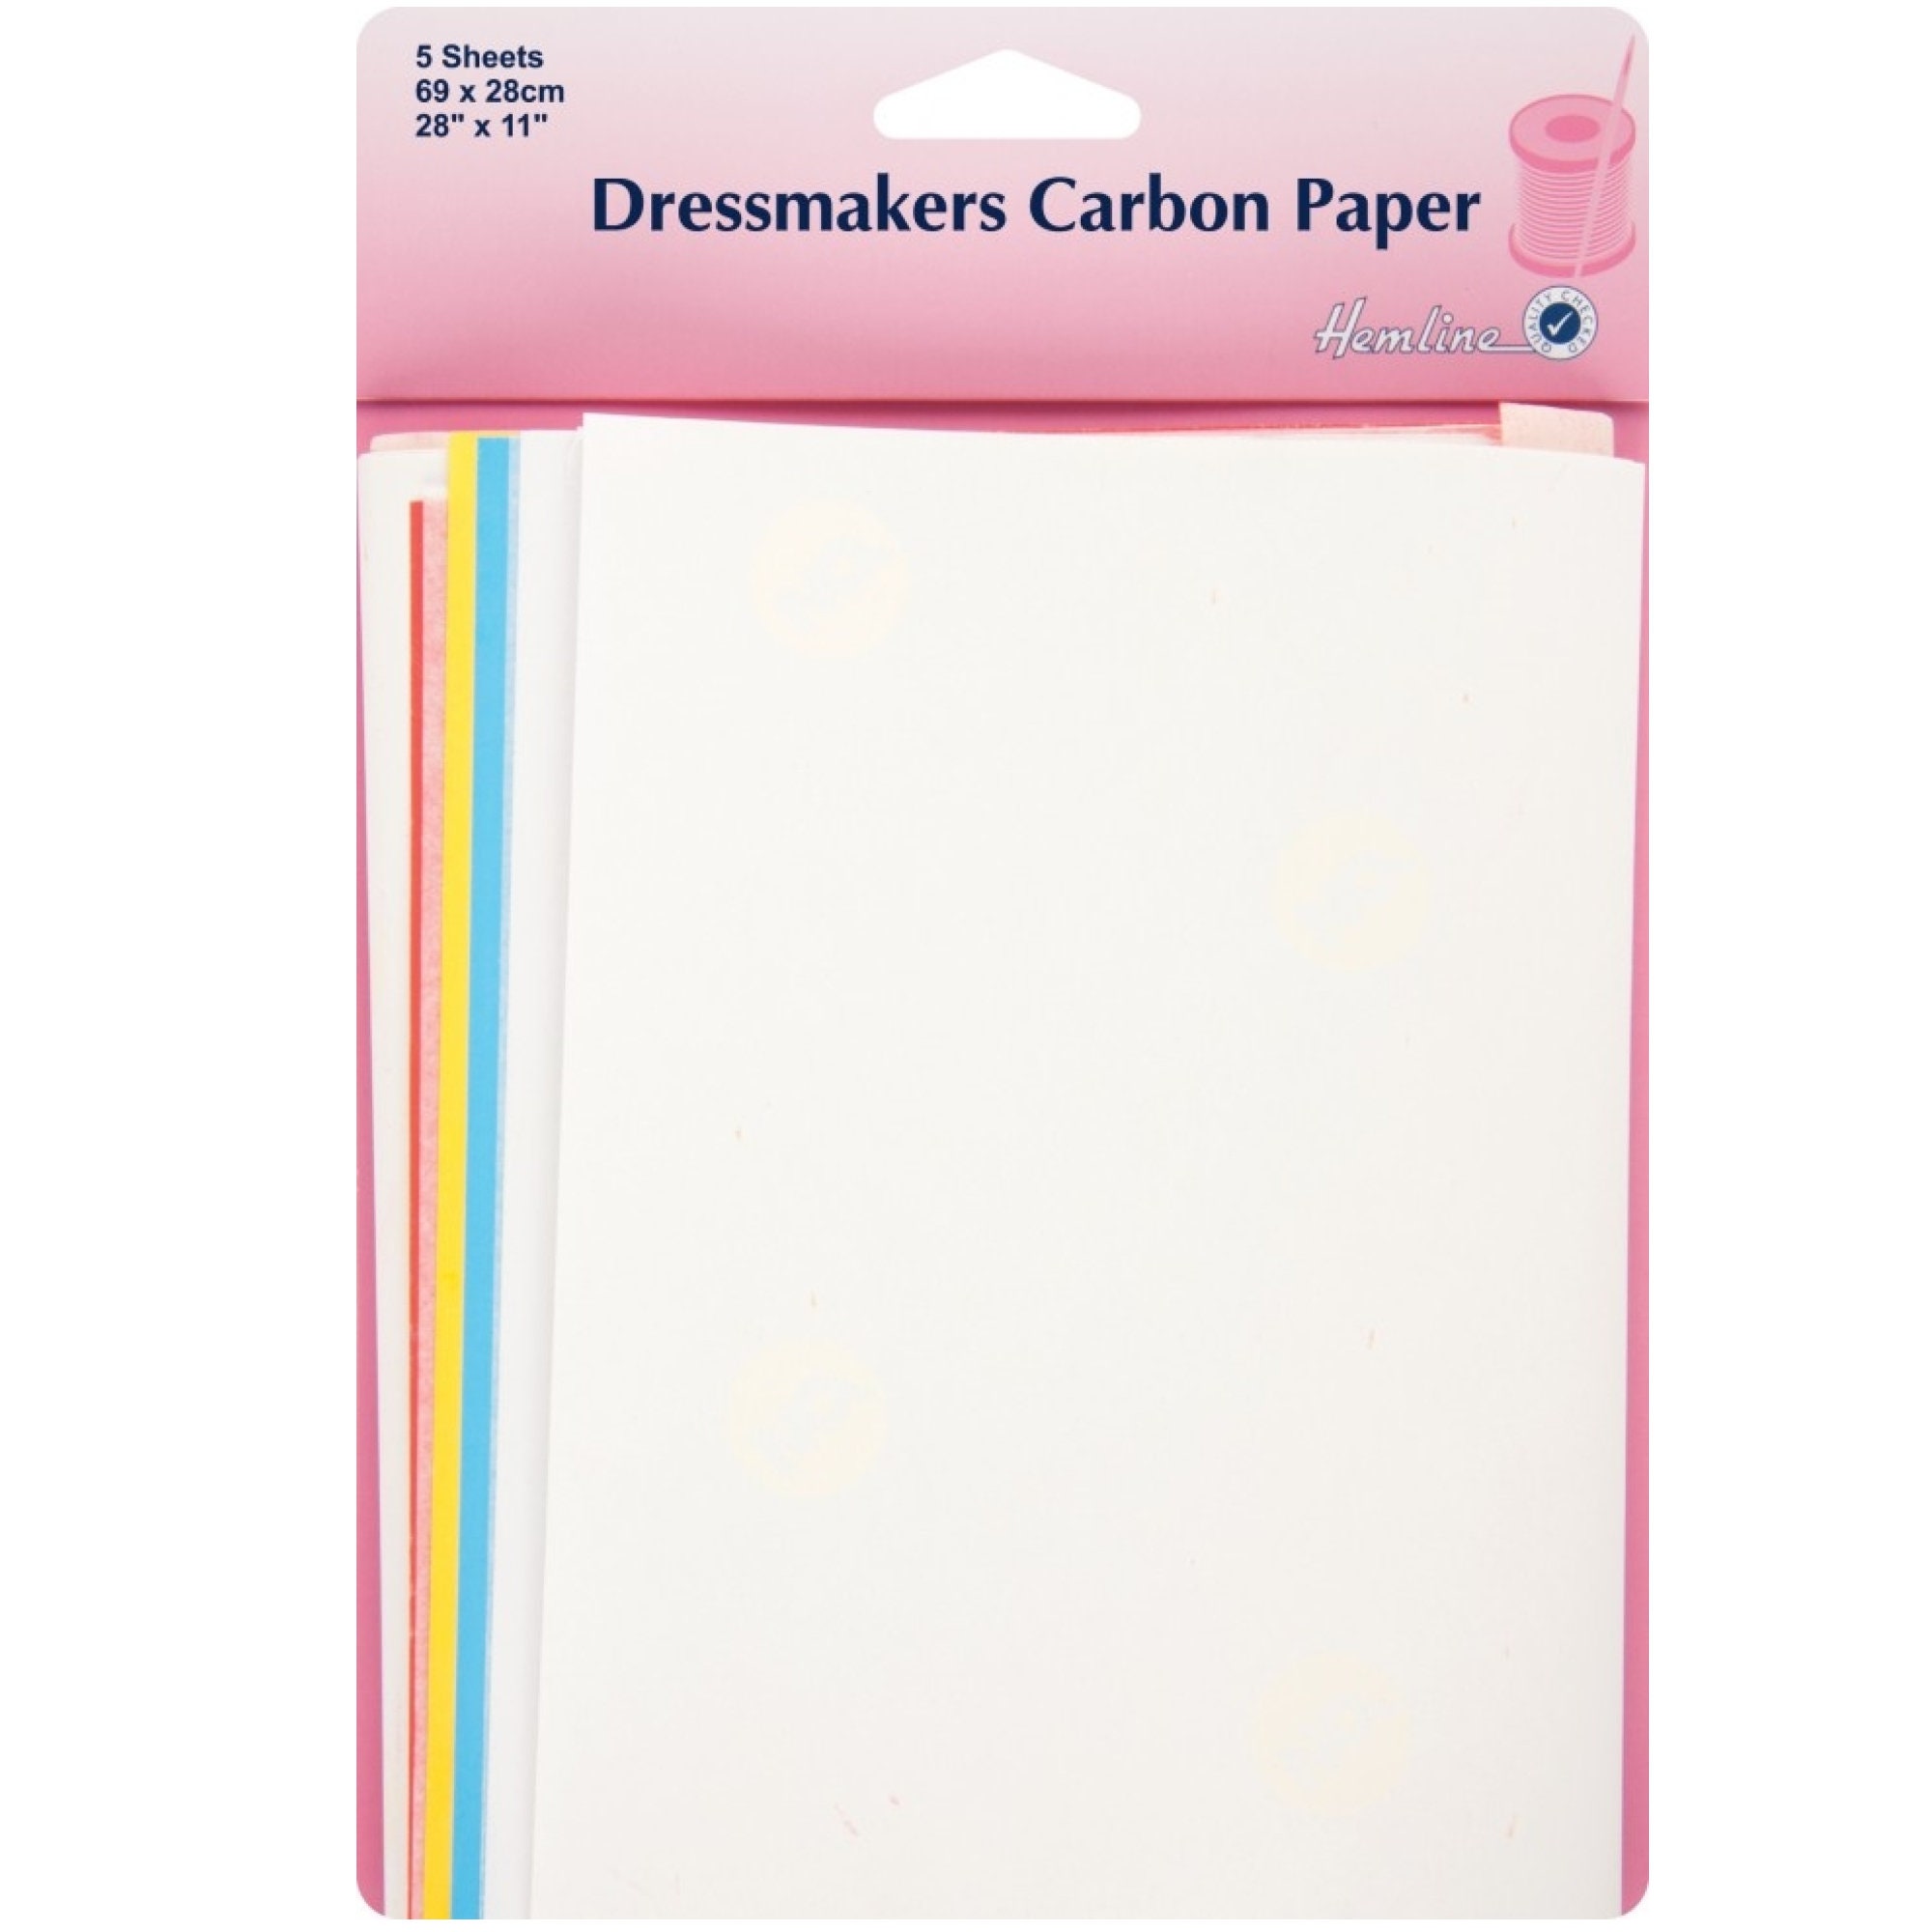 Hemline Dressmakers Carbon Paper 69x28cm 5 Sheets 